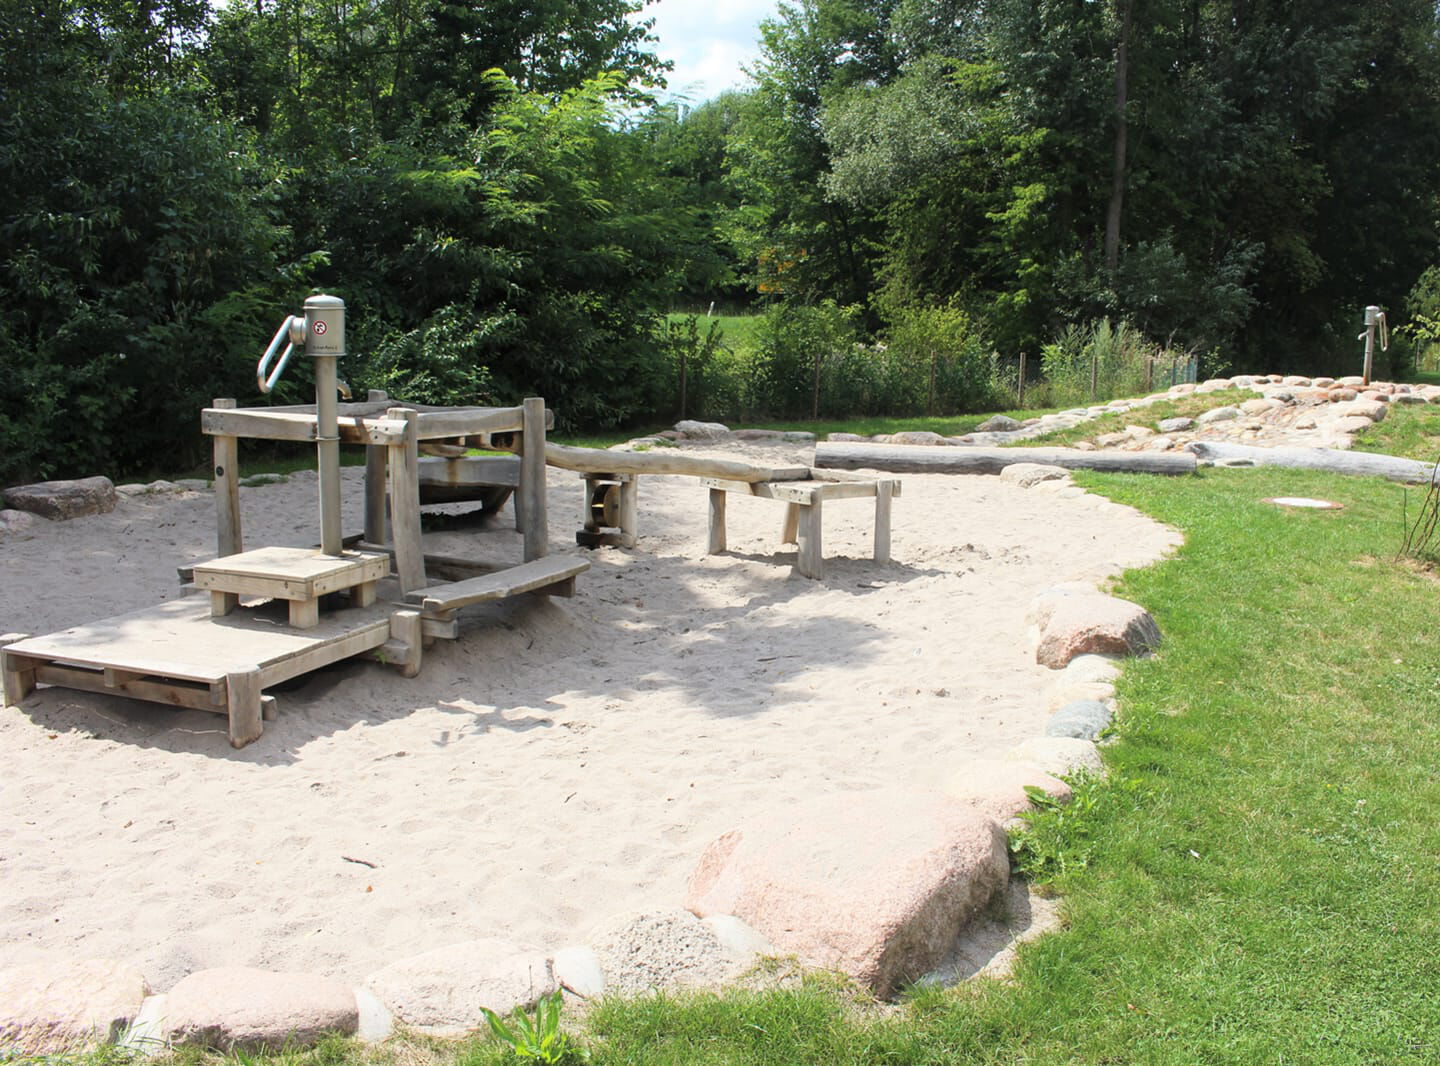 Spielanlage aus Holz auf großer Sandfläche